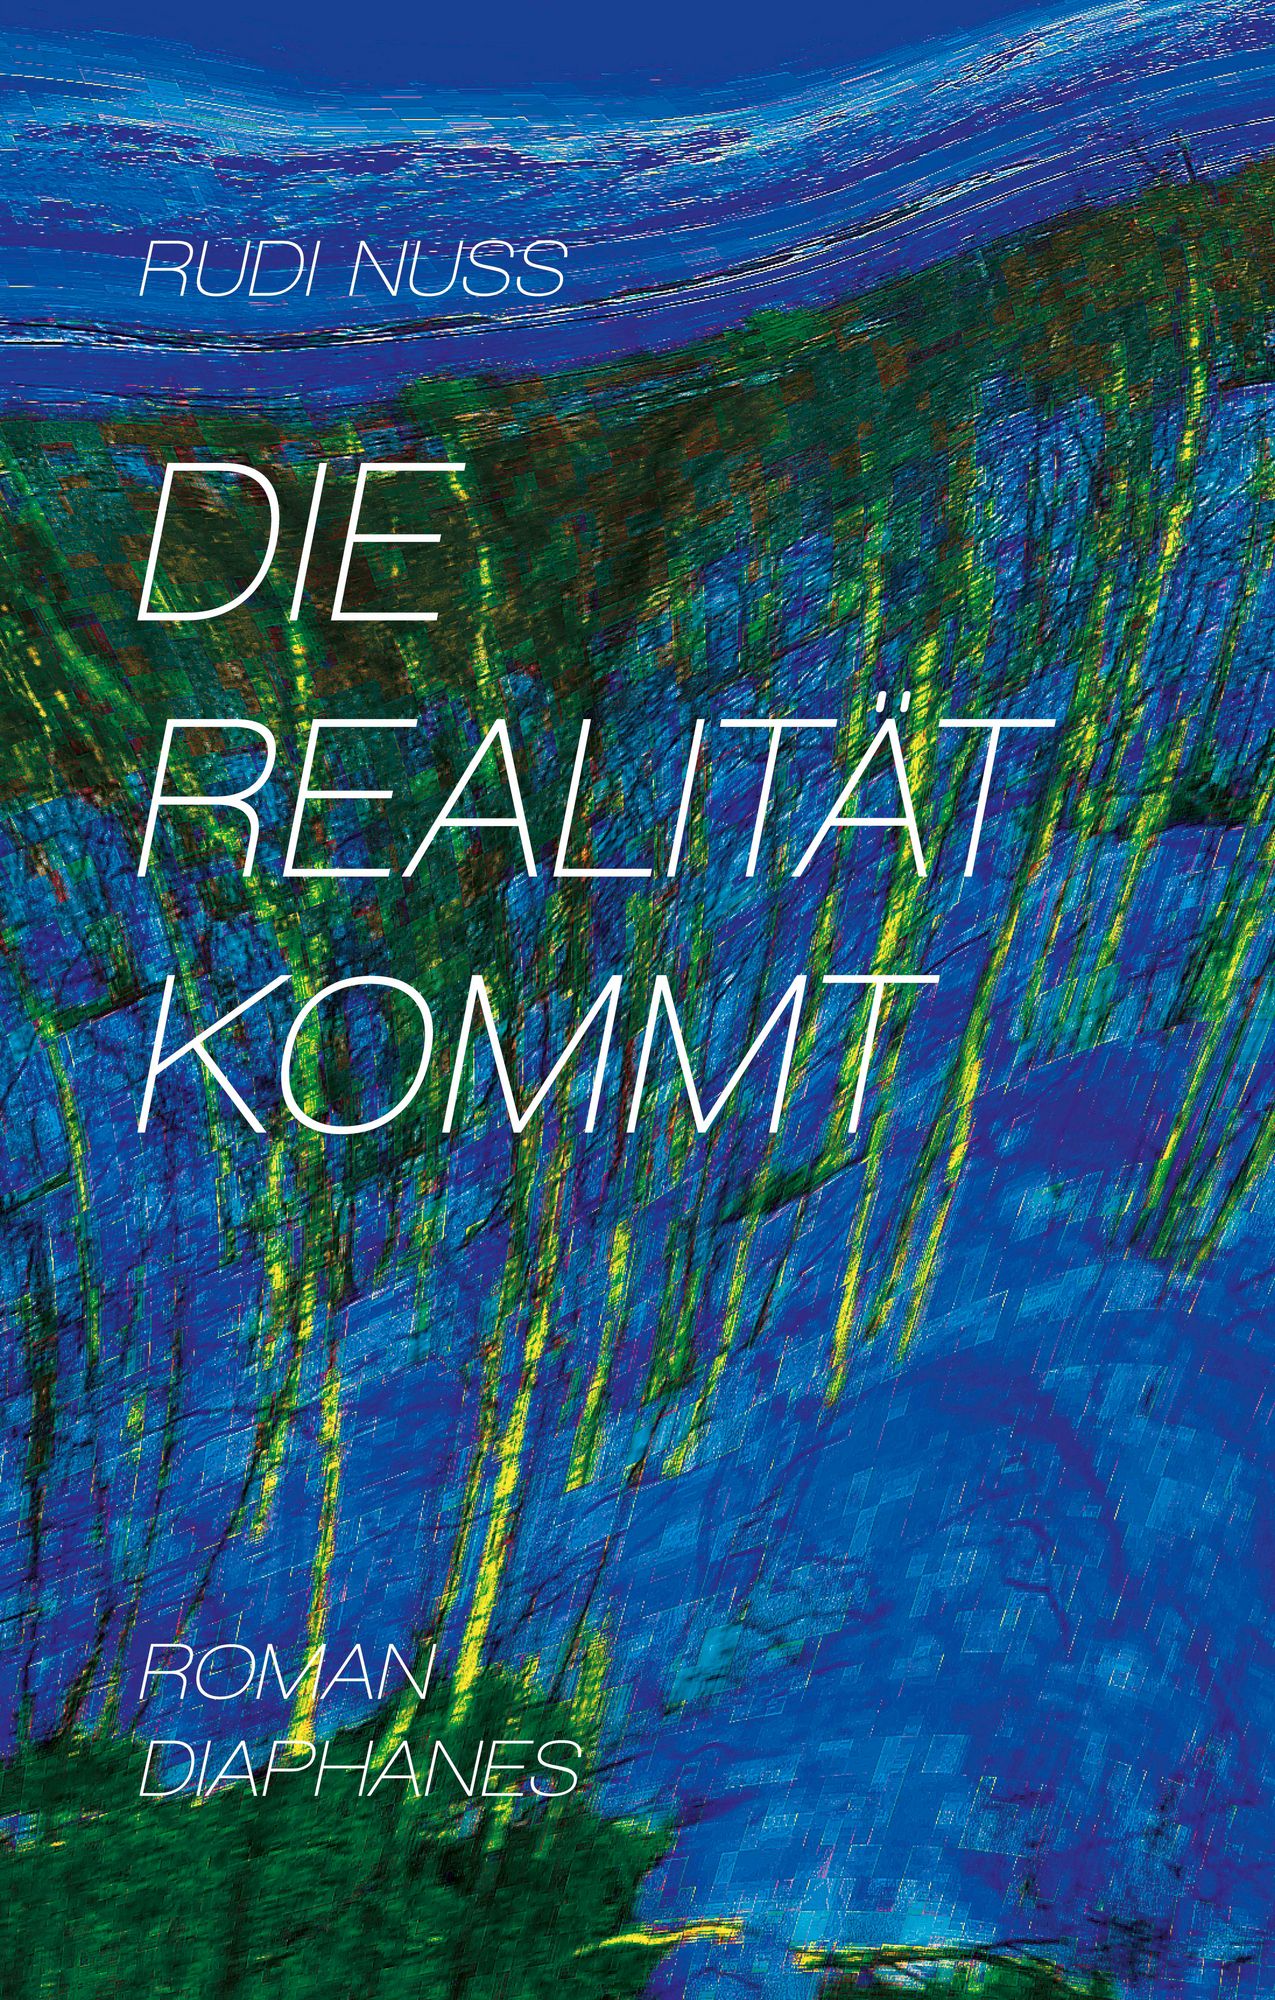 Rudi Nuss: Die Realität kommt (EBook, German language, Diaphanes)